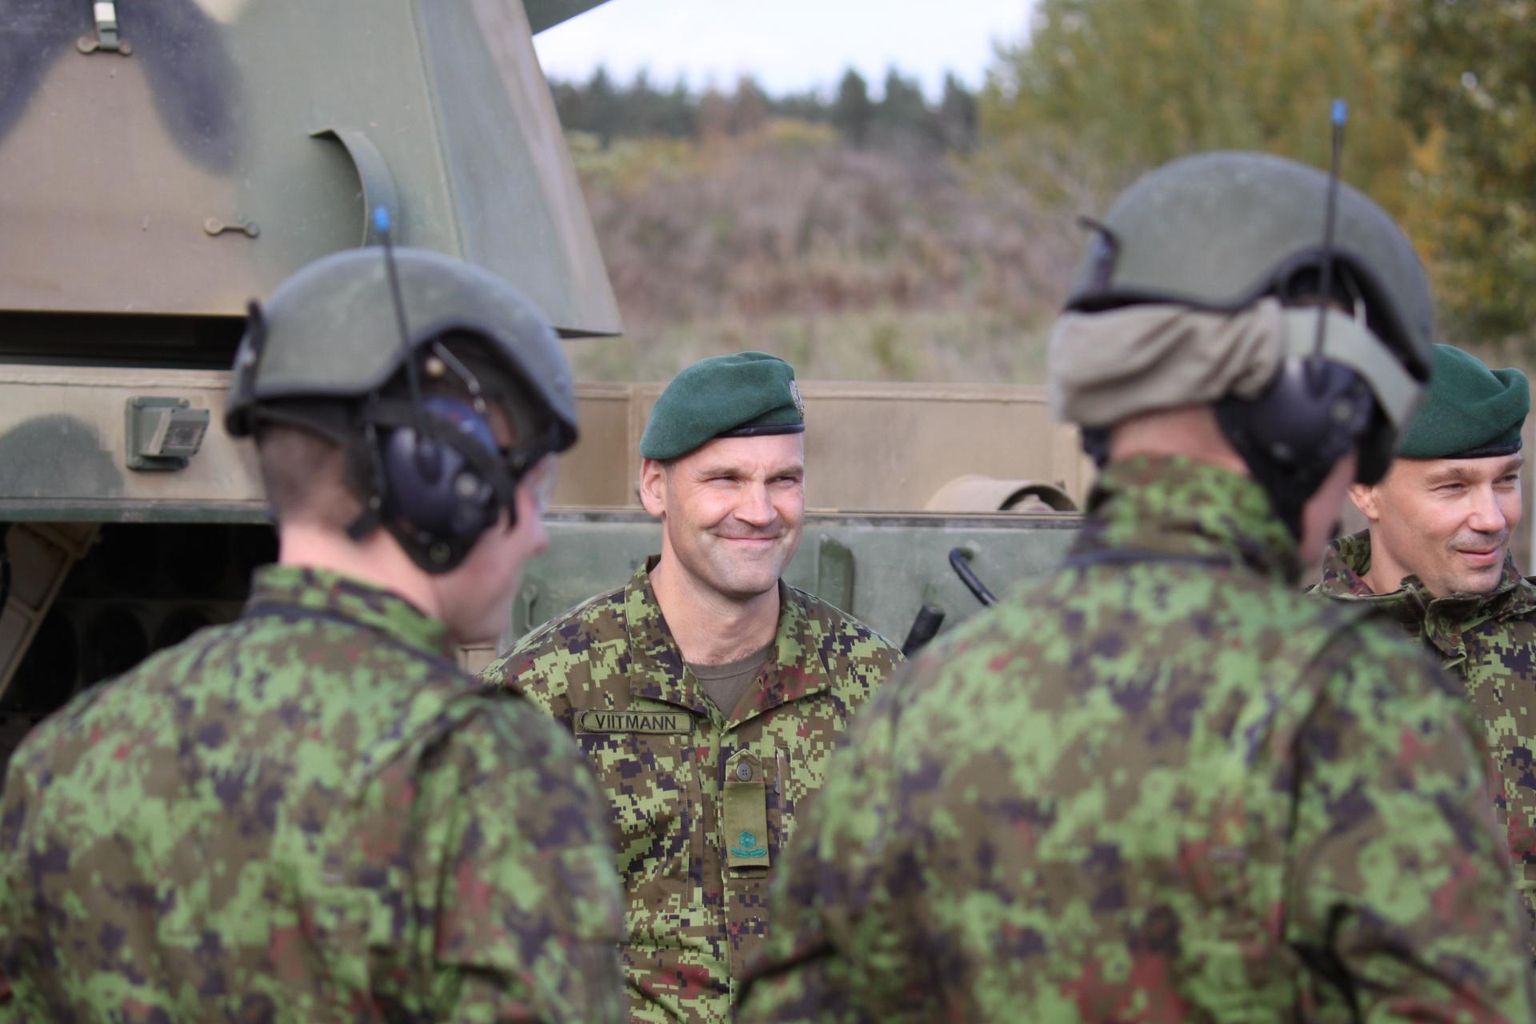 Türilt pärit major Rauno Viitmann (keskel) vastutab uutele liikursuurtükkidele ülemineku väljaõppe eest. Paremal suurtükiväepataljoni ülem kolonelleitnant Marko Tomentšuk.